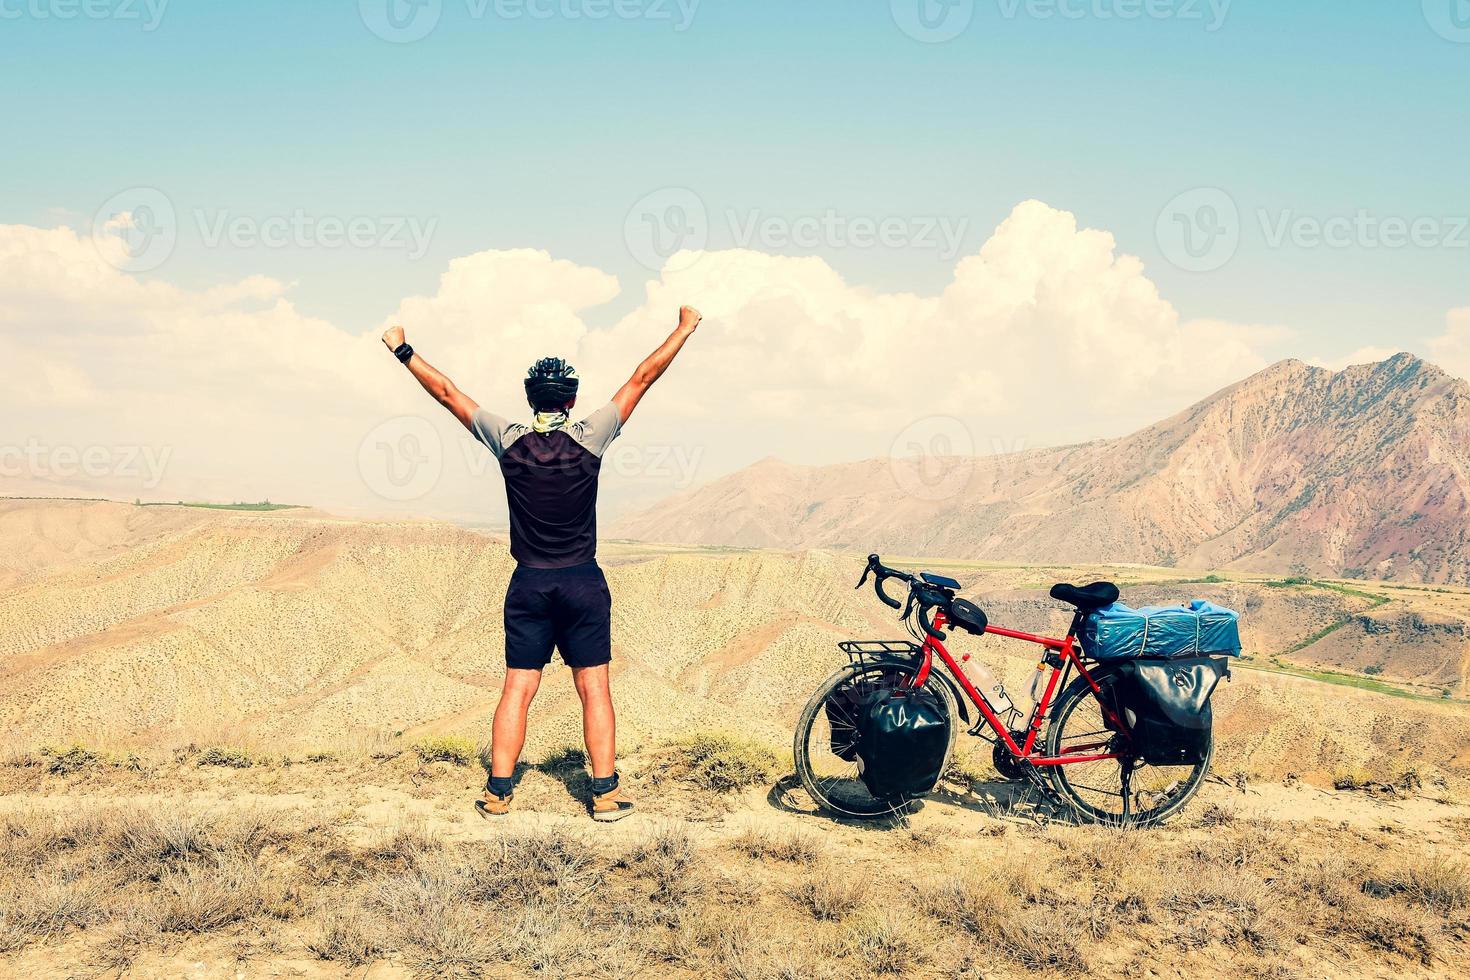 cinématique inspirant excité fit cycliste masculin caucasien debout sur le point de vue supérieur en vélo de randonnée rouge dans les montagnes désertes avec les mains en l'air mode de vie insouciant confiant photo